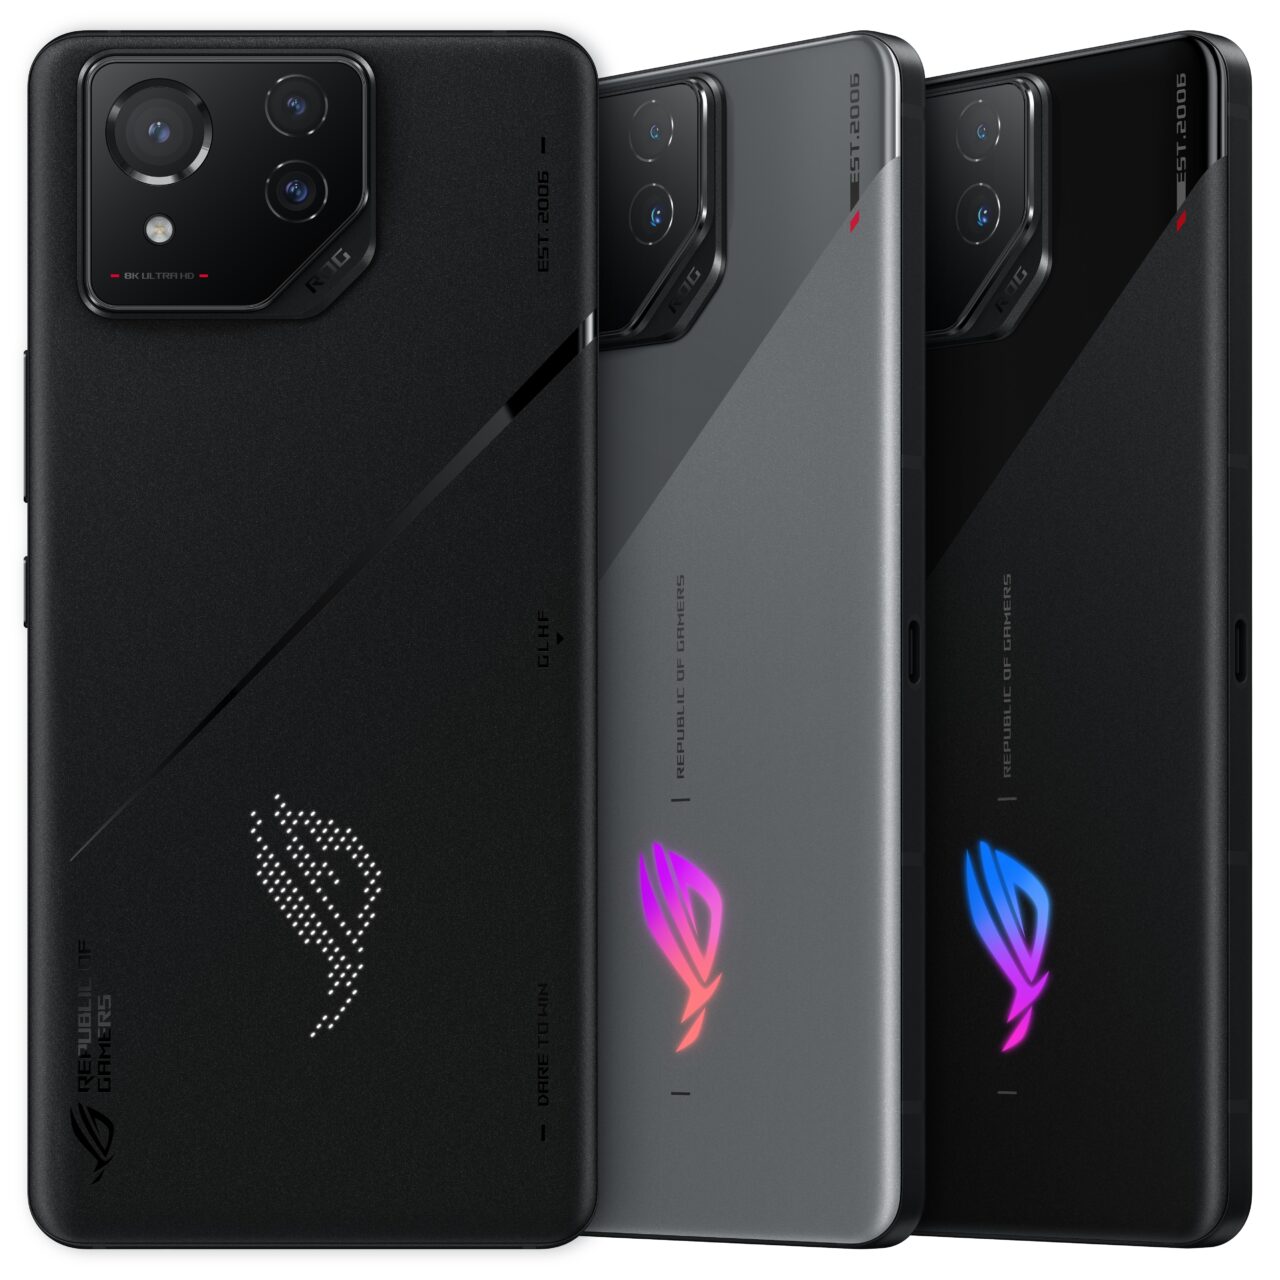 Trzy smartfony gamingowe ROG Phone umieszczone obok siebie, prezentujące tylną część z różnymi kolorami i brandingiem Republic of Gamers.